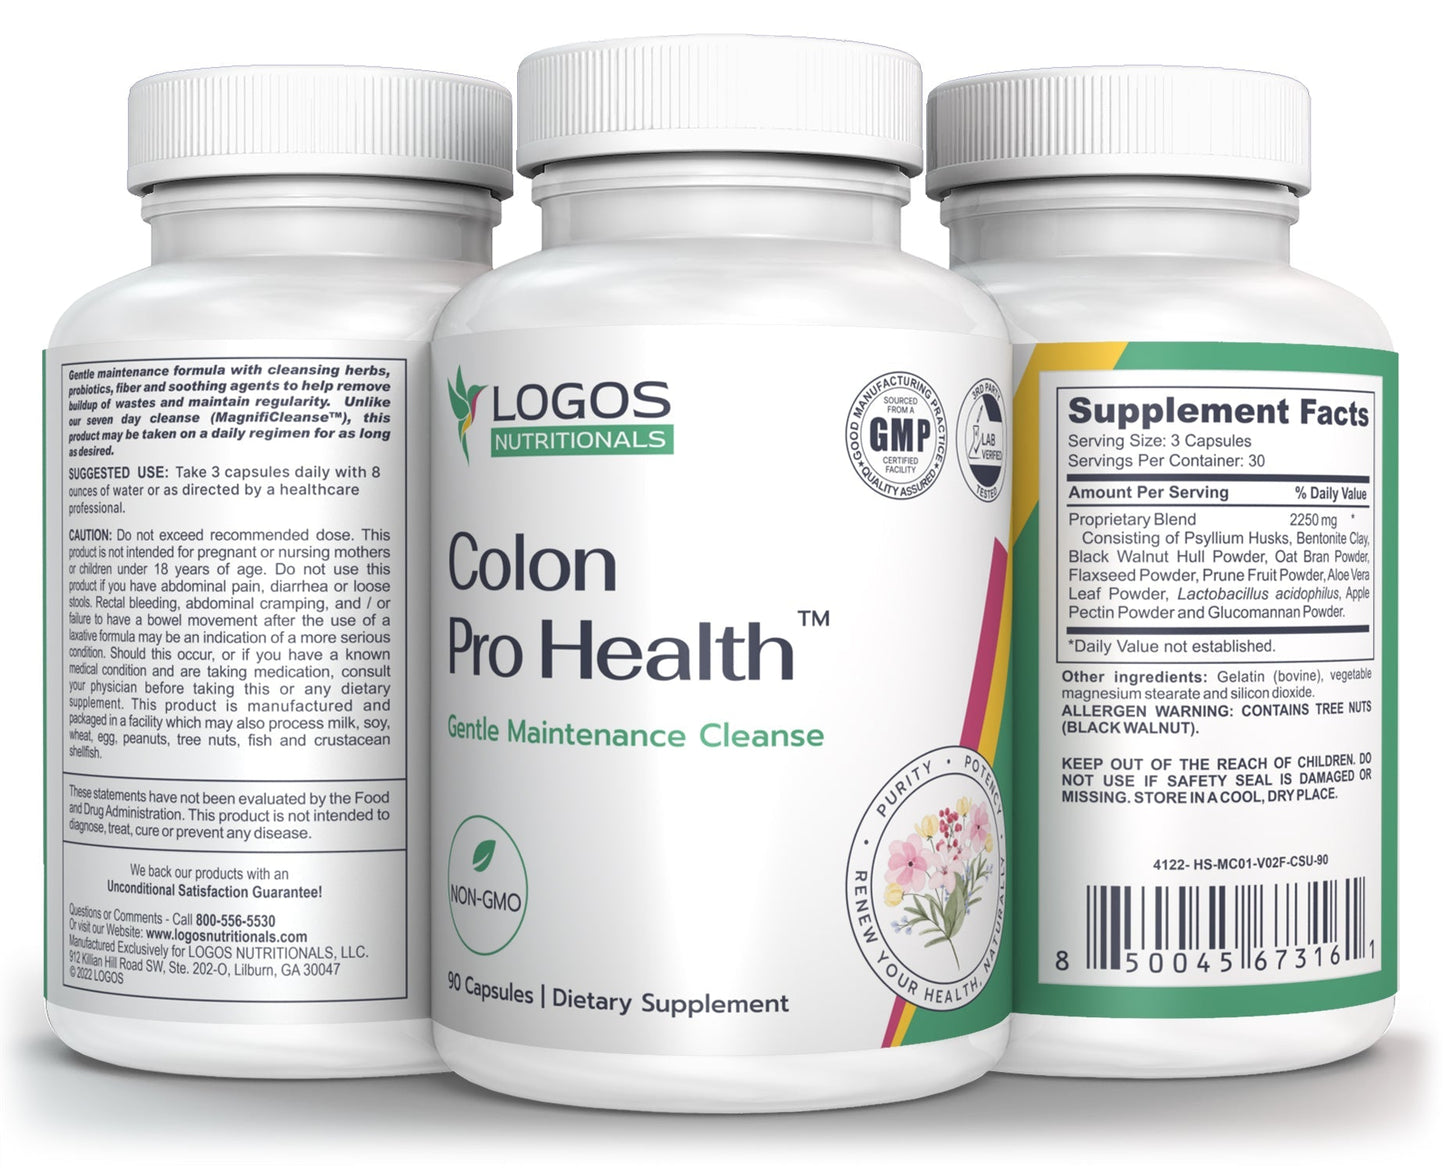 Logos Nutritionals_Colon Pro Health